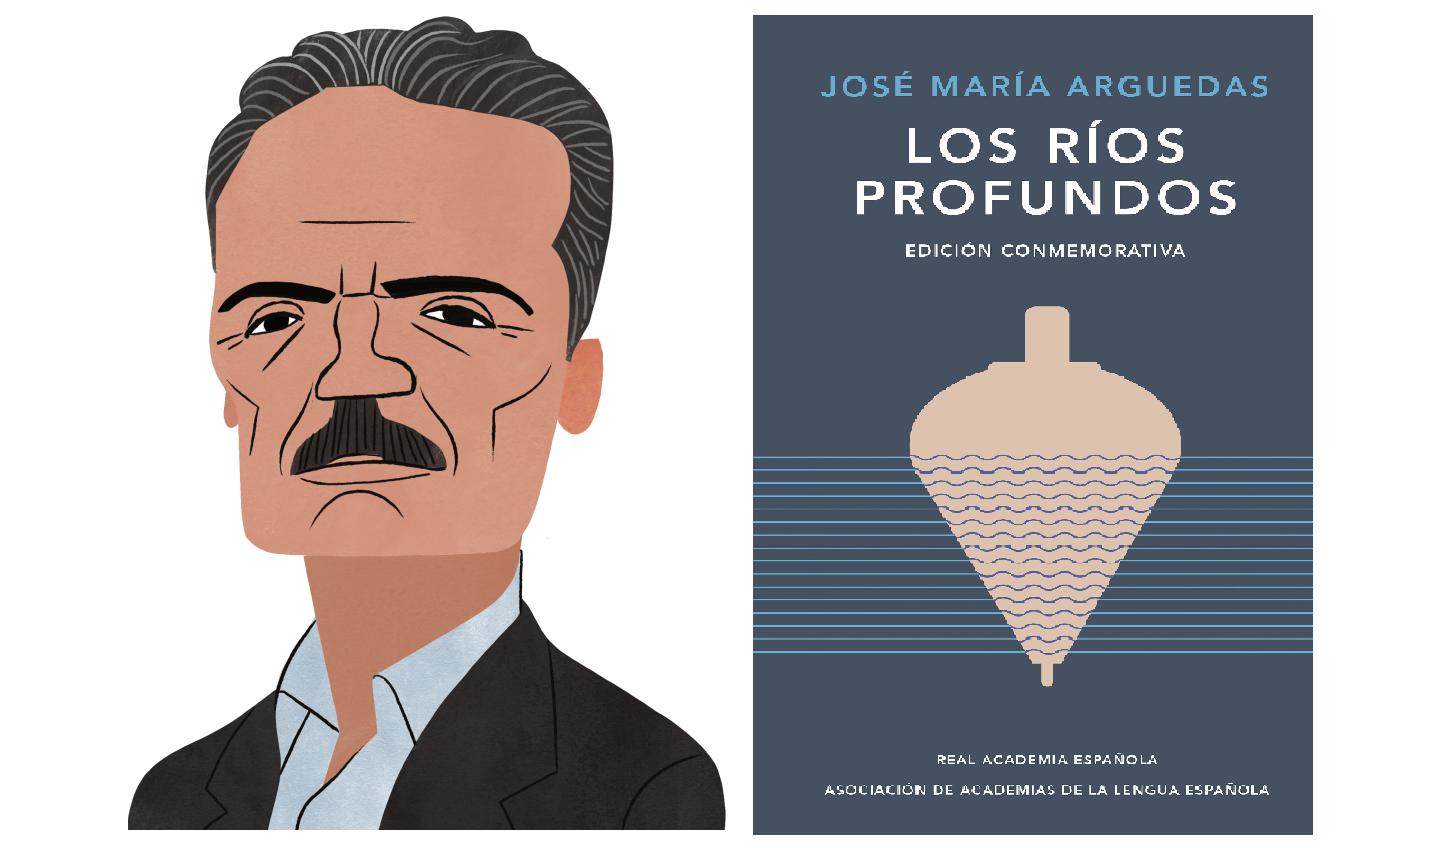 El primer lugar, con 50 votos, lo ocupó "Los ríos profundos", de José María Arguedas Ilustraciones: Víctor Aguilar Rúa.